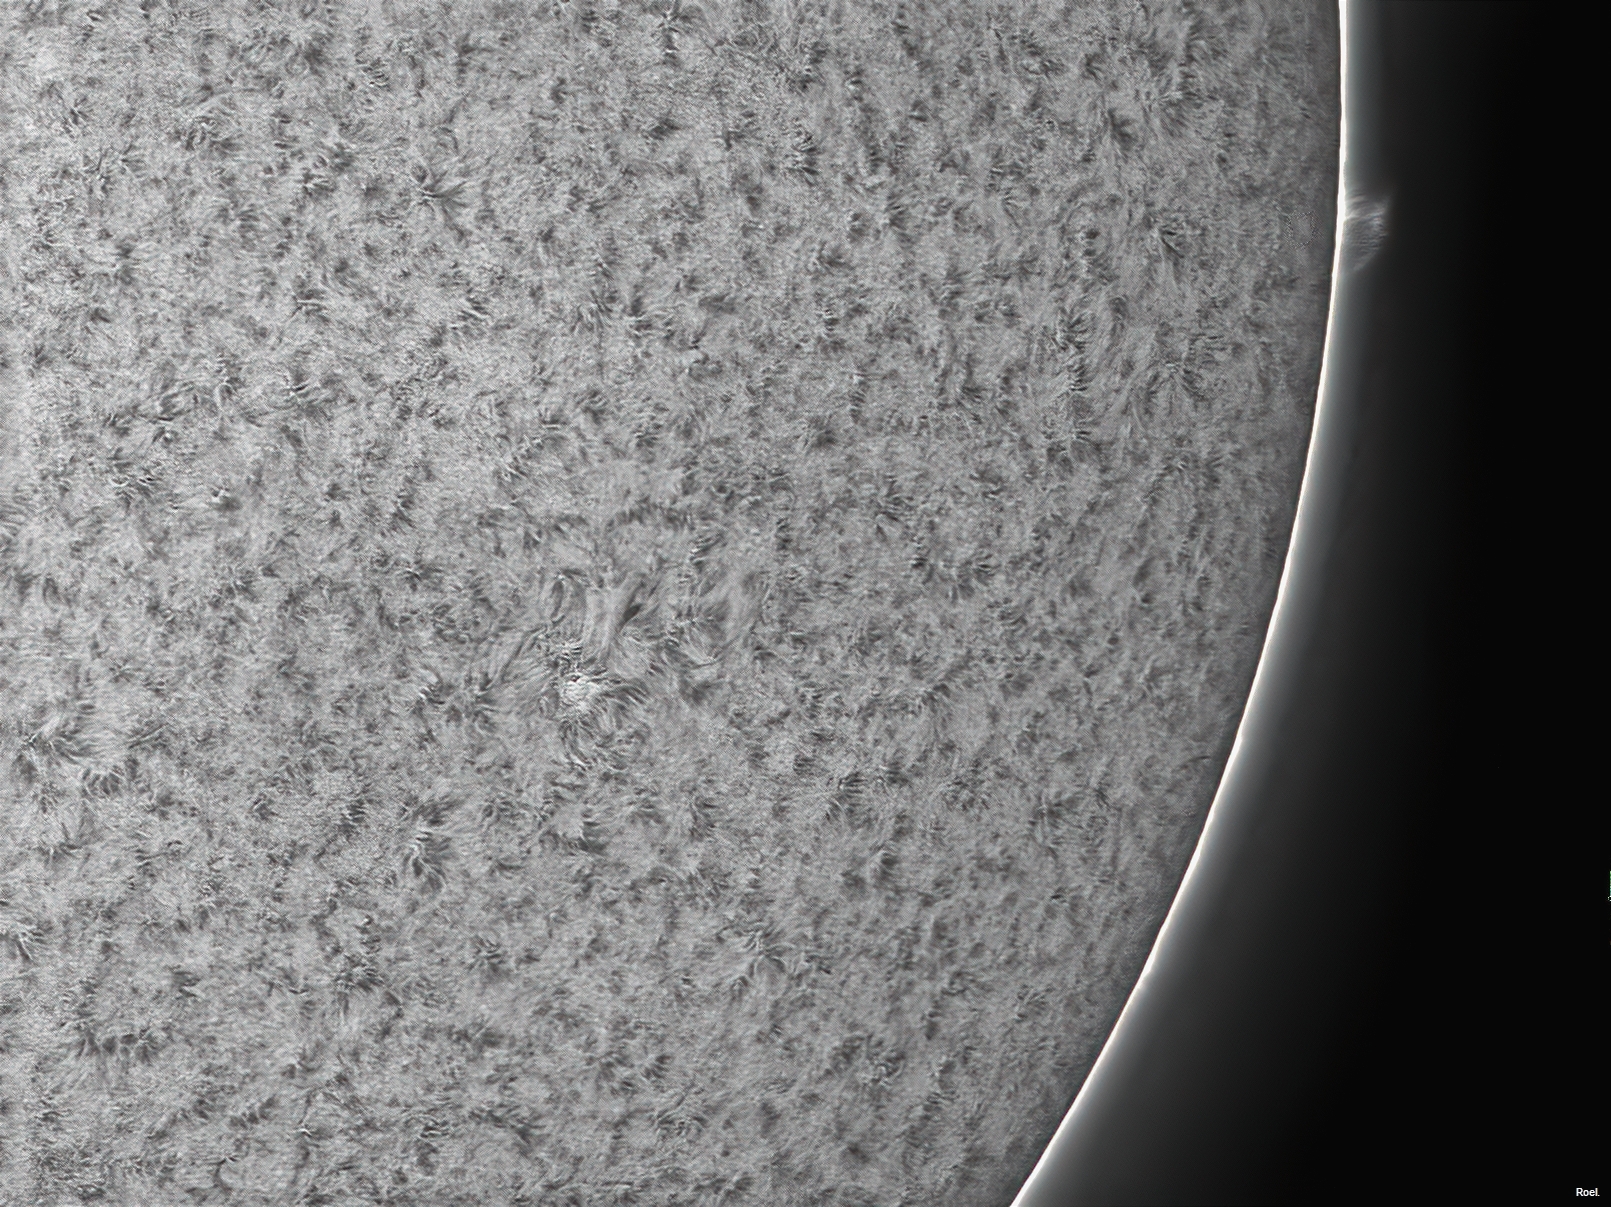 Sol del 13 de septiembre del 2020-Stellarvue-Daystar-4pos.jpg